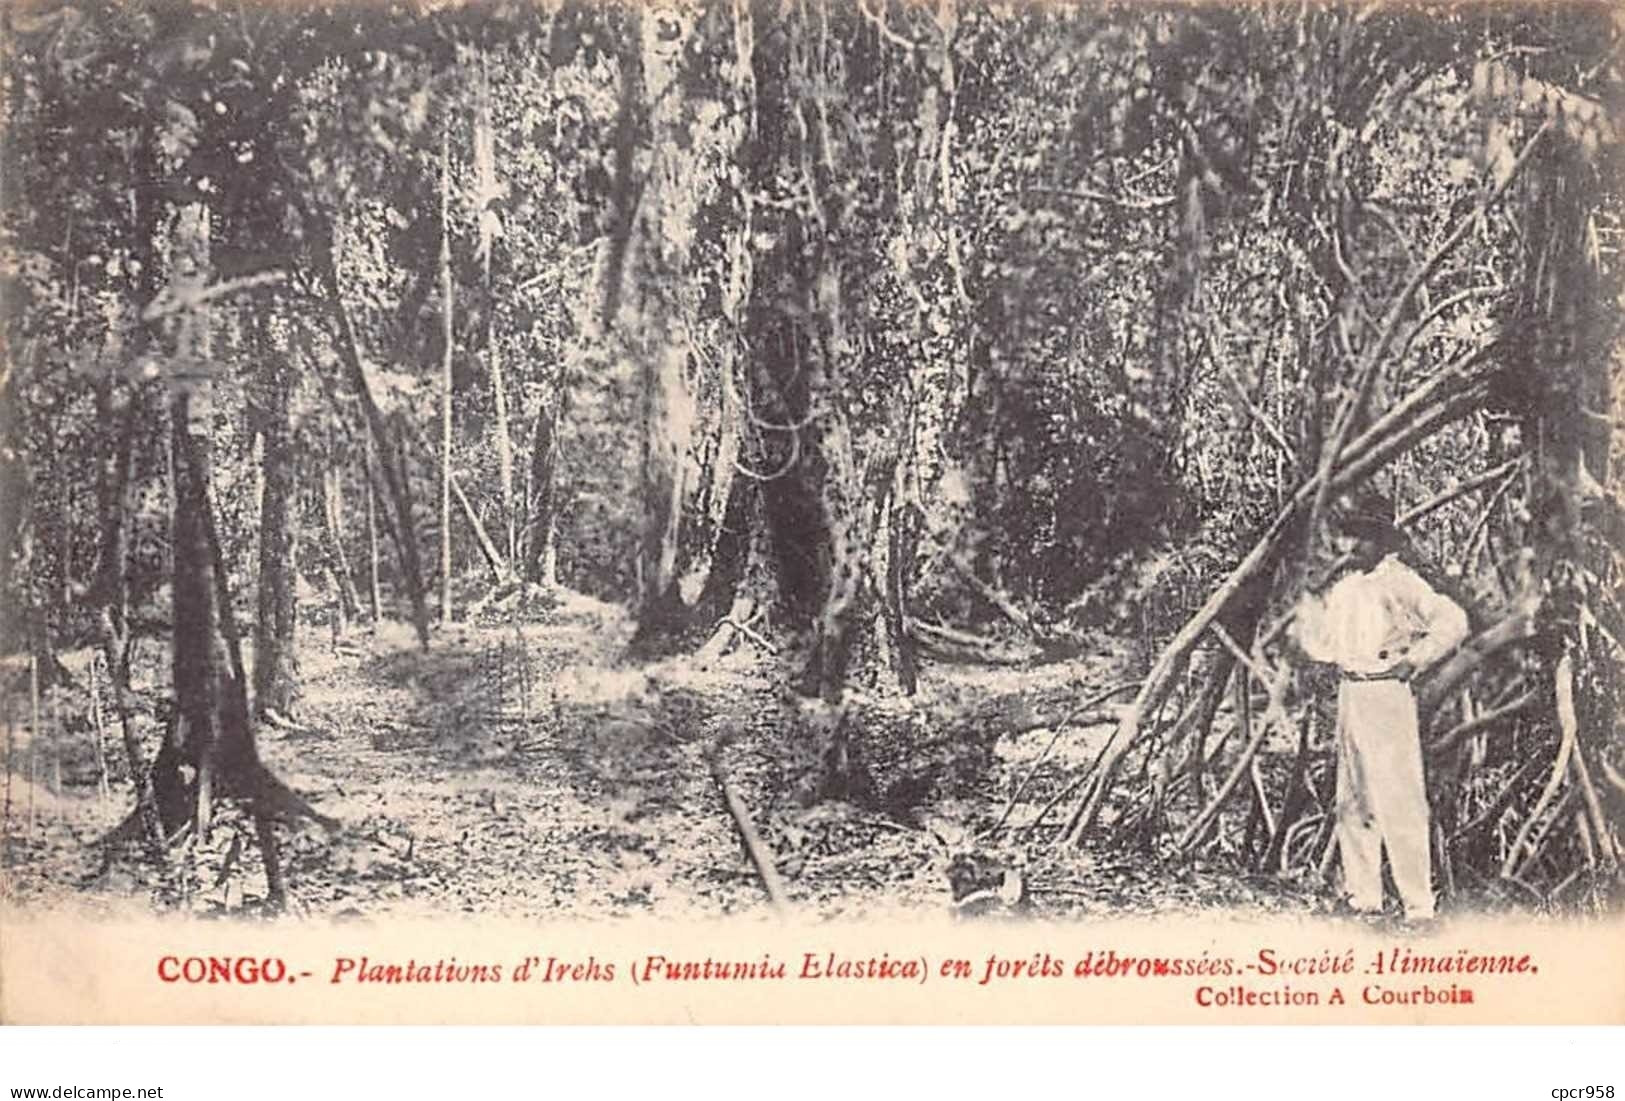 Congo Français - N°61540 - Plantations D'Irechs (Funtumia Elastica) En Forêts Débroussés - Société Alimaïnne - French Congo